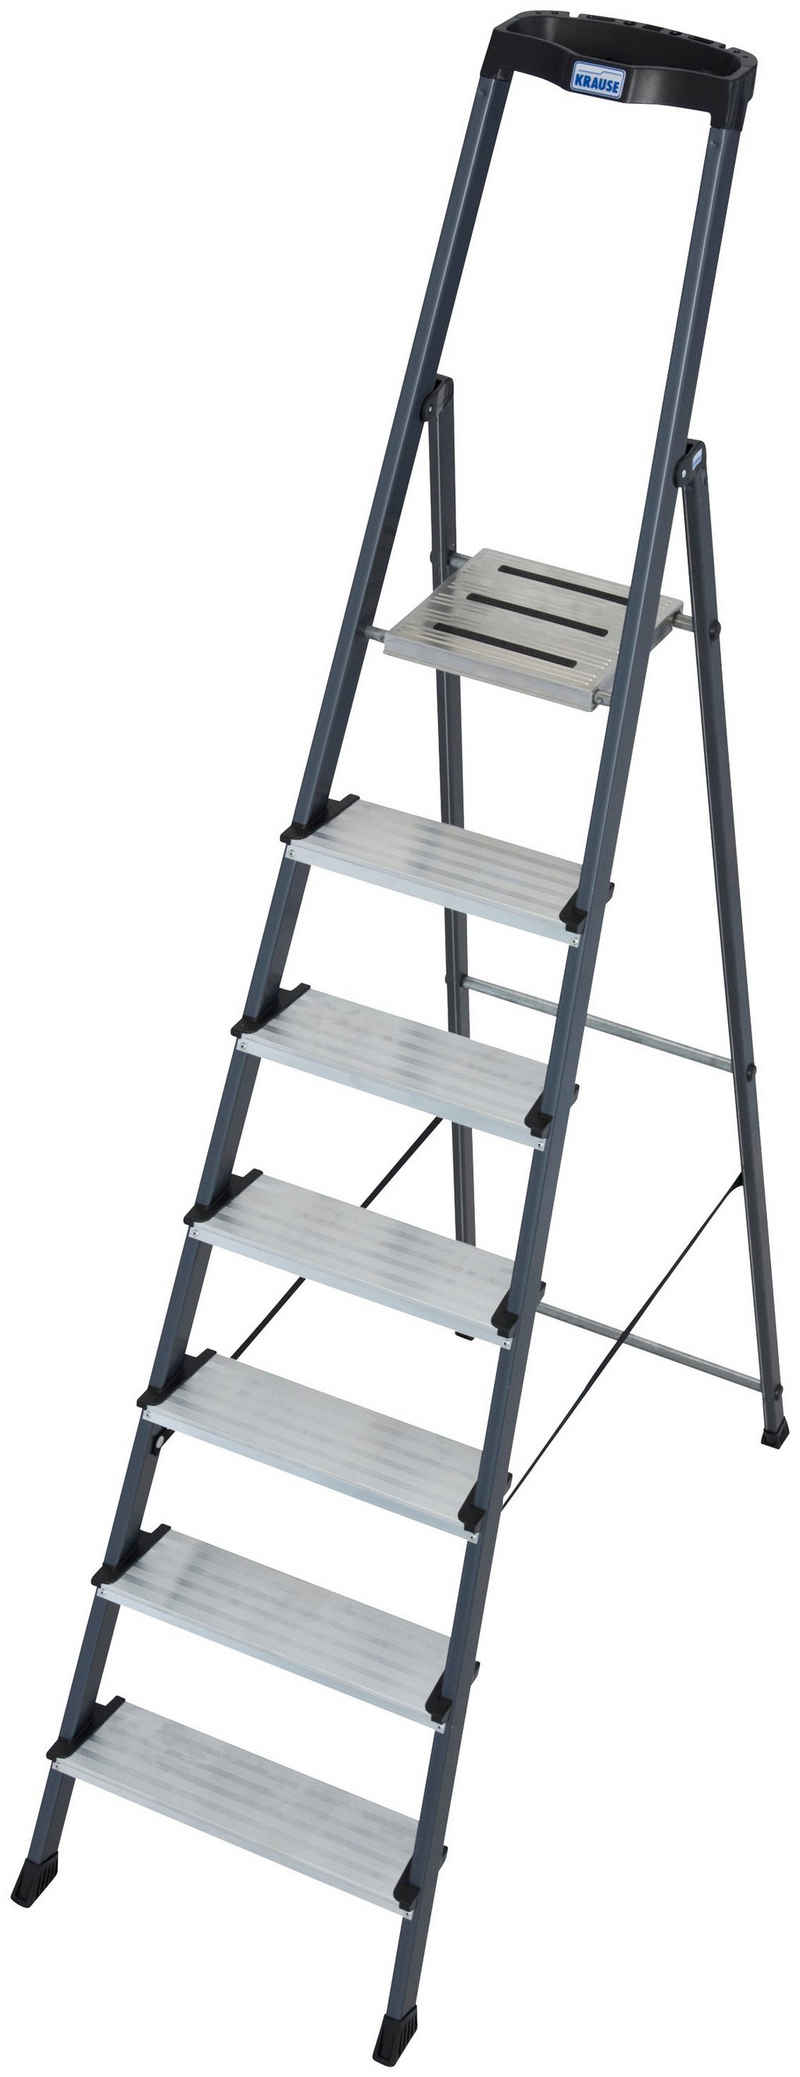 KRAUSE Stehleiter Securo, Alu eloxiert, 1x7 Stufen, Arbeitshöhe ca. 350 cm